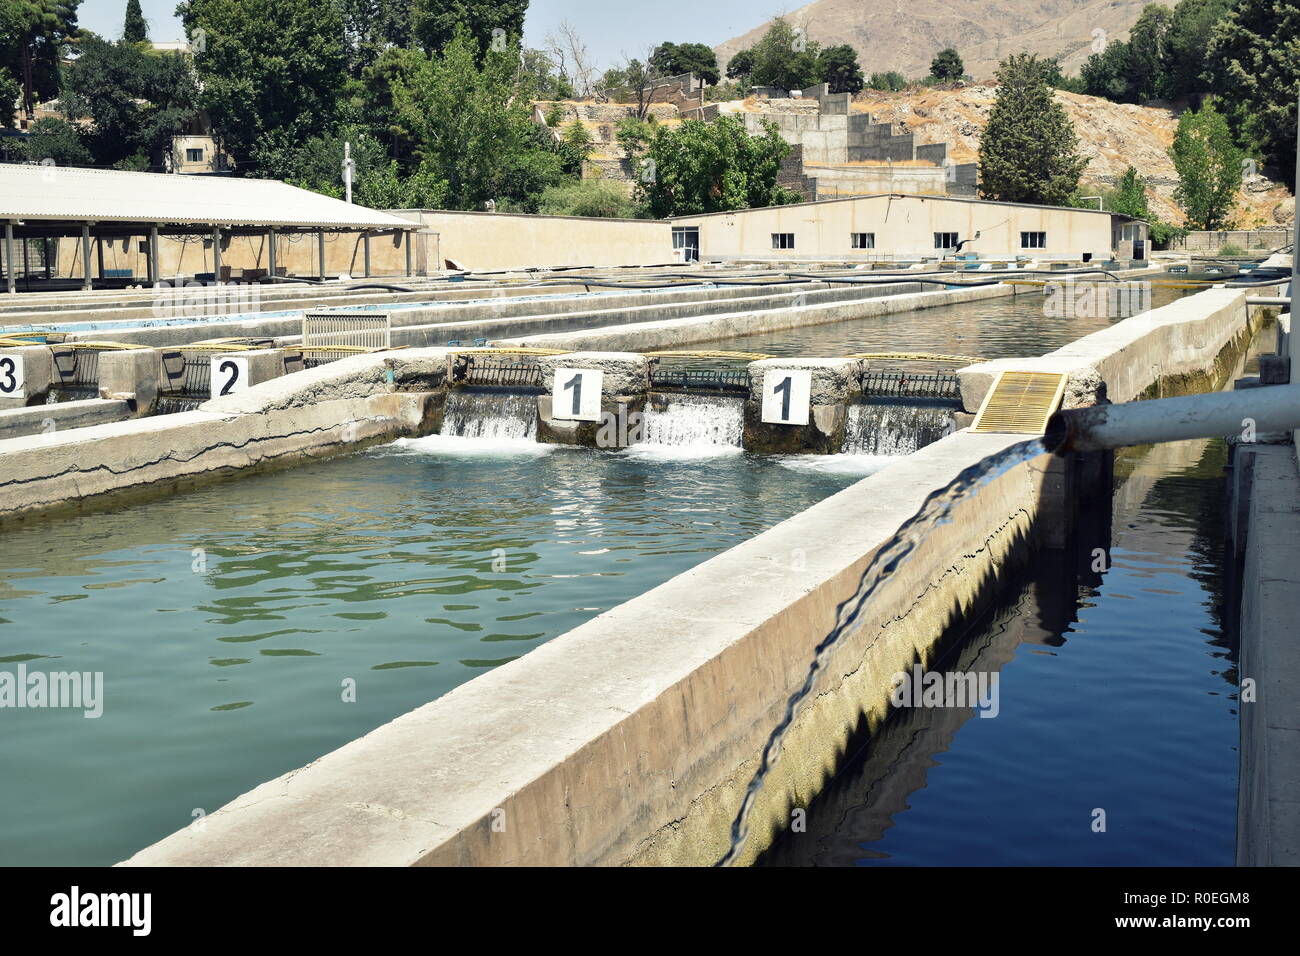 Piscines d'eau de l'aquaculture de poissons de la pêche l'agriculture à Karaj, près de Téhéran, l'Iran, l'élevage et la vente de tache rouge, truite arc-en-ciel et saumon caspienne Banque D'Images